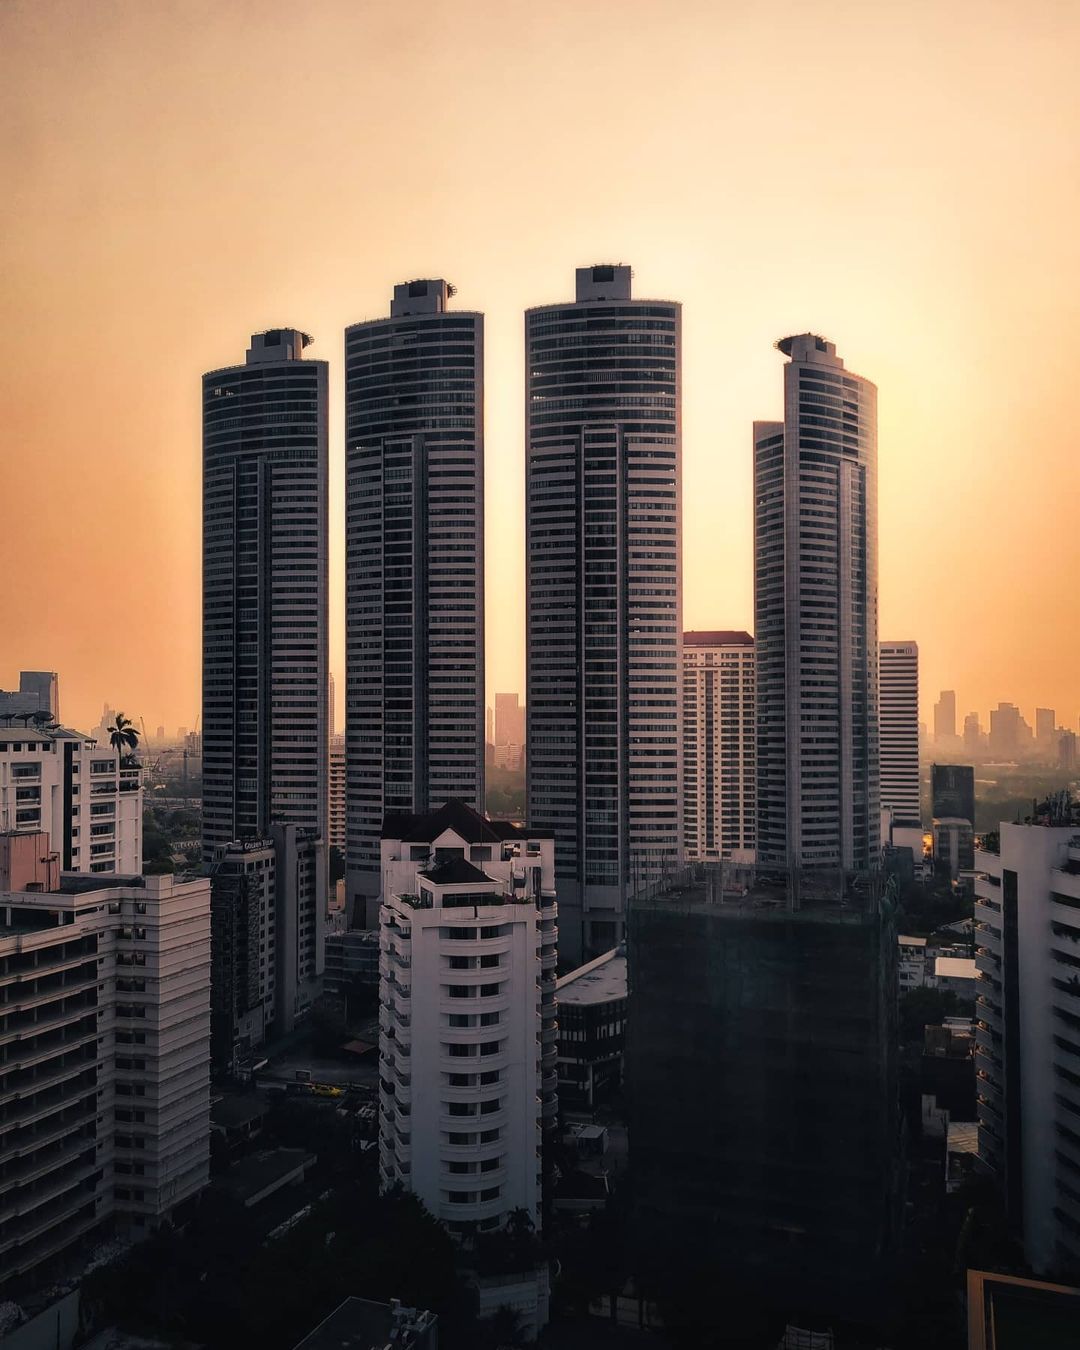 Фотопрогулка по Бангкоку городской, Наттачат, фотографии, Читать, в Instagram, странице, своей, пейзажами, городскими, удивительными, делится, архитектурной, уличной, Вахираваракарн, фокусируется, Таиланд, Бангкока, исследователь, фотографсамоучка, талантливый